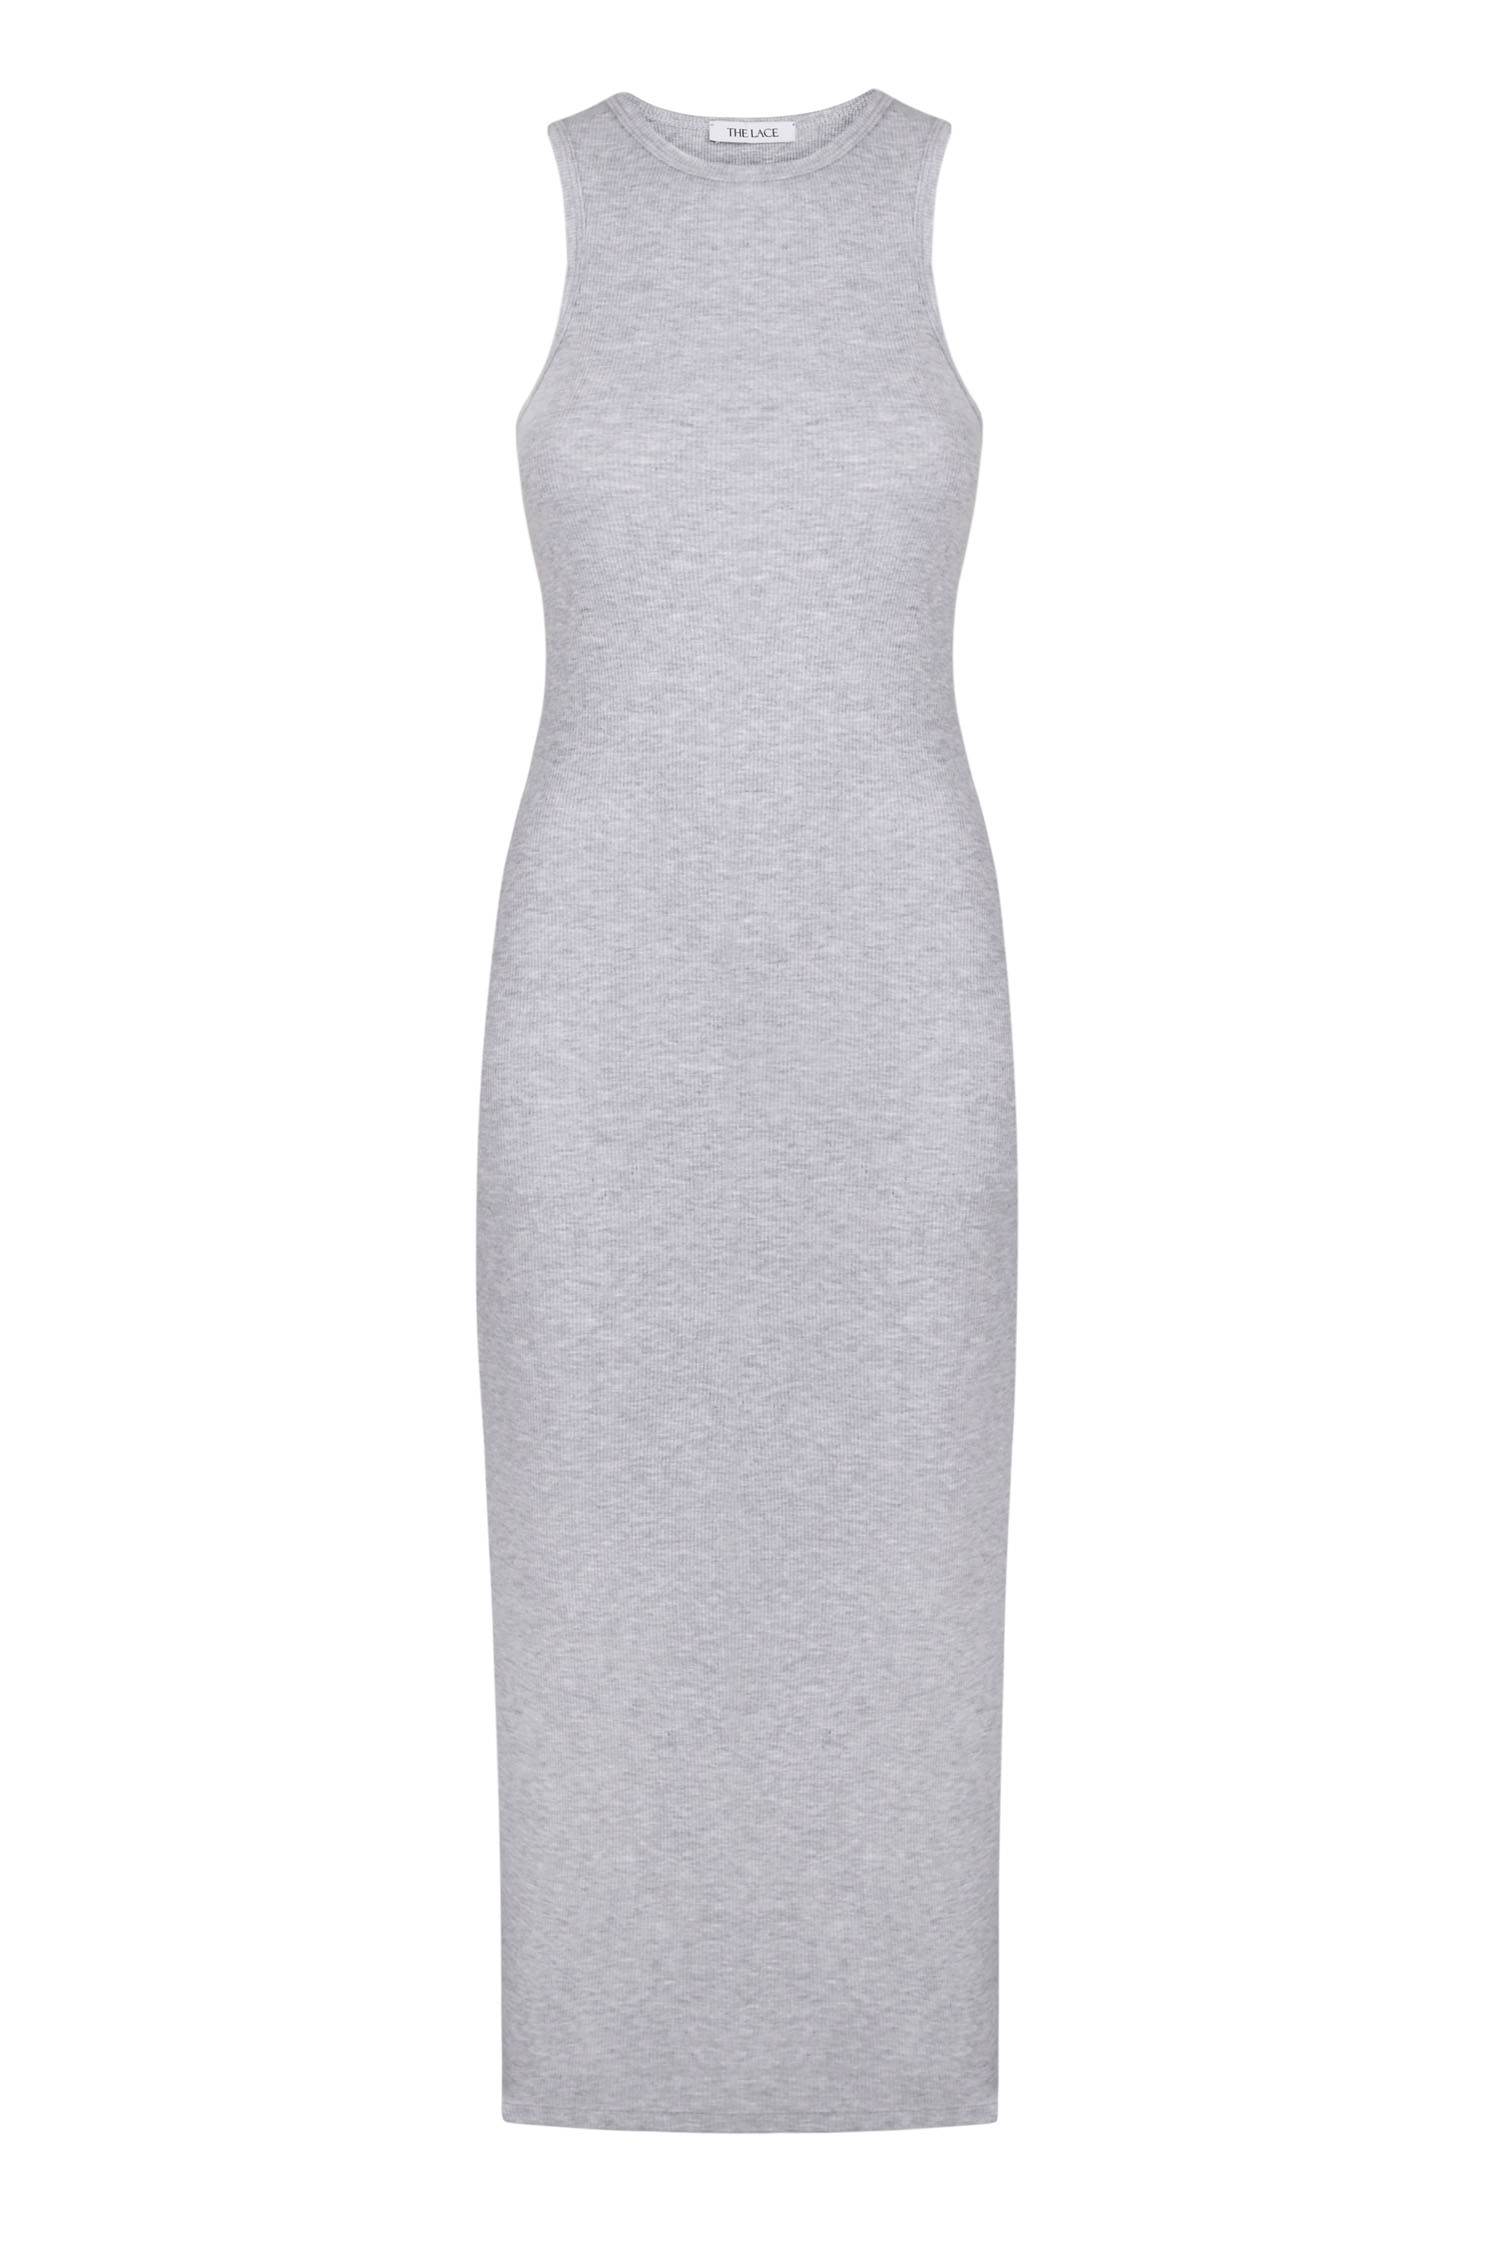 Сукня міді в рубчик сірий меланж - THE LACE фото 136647